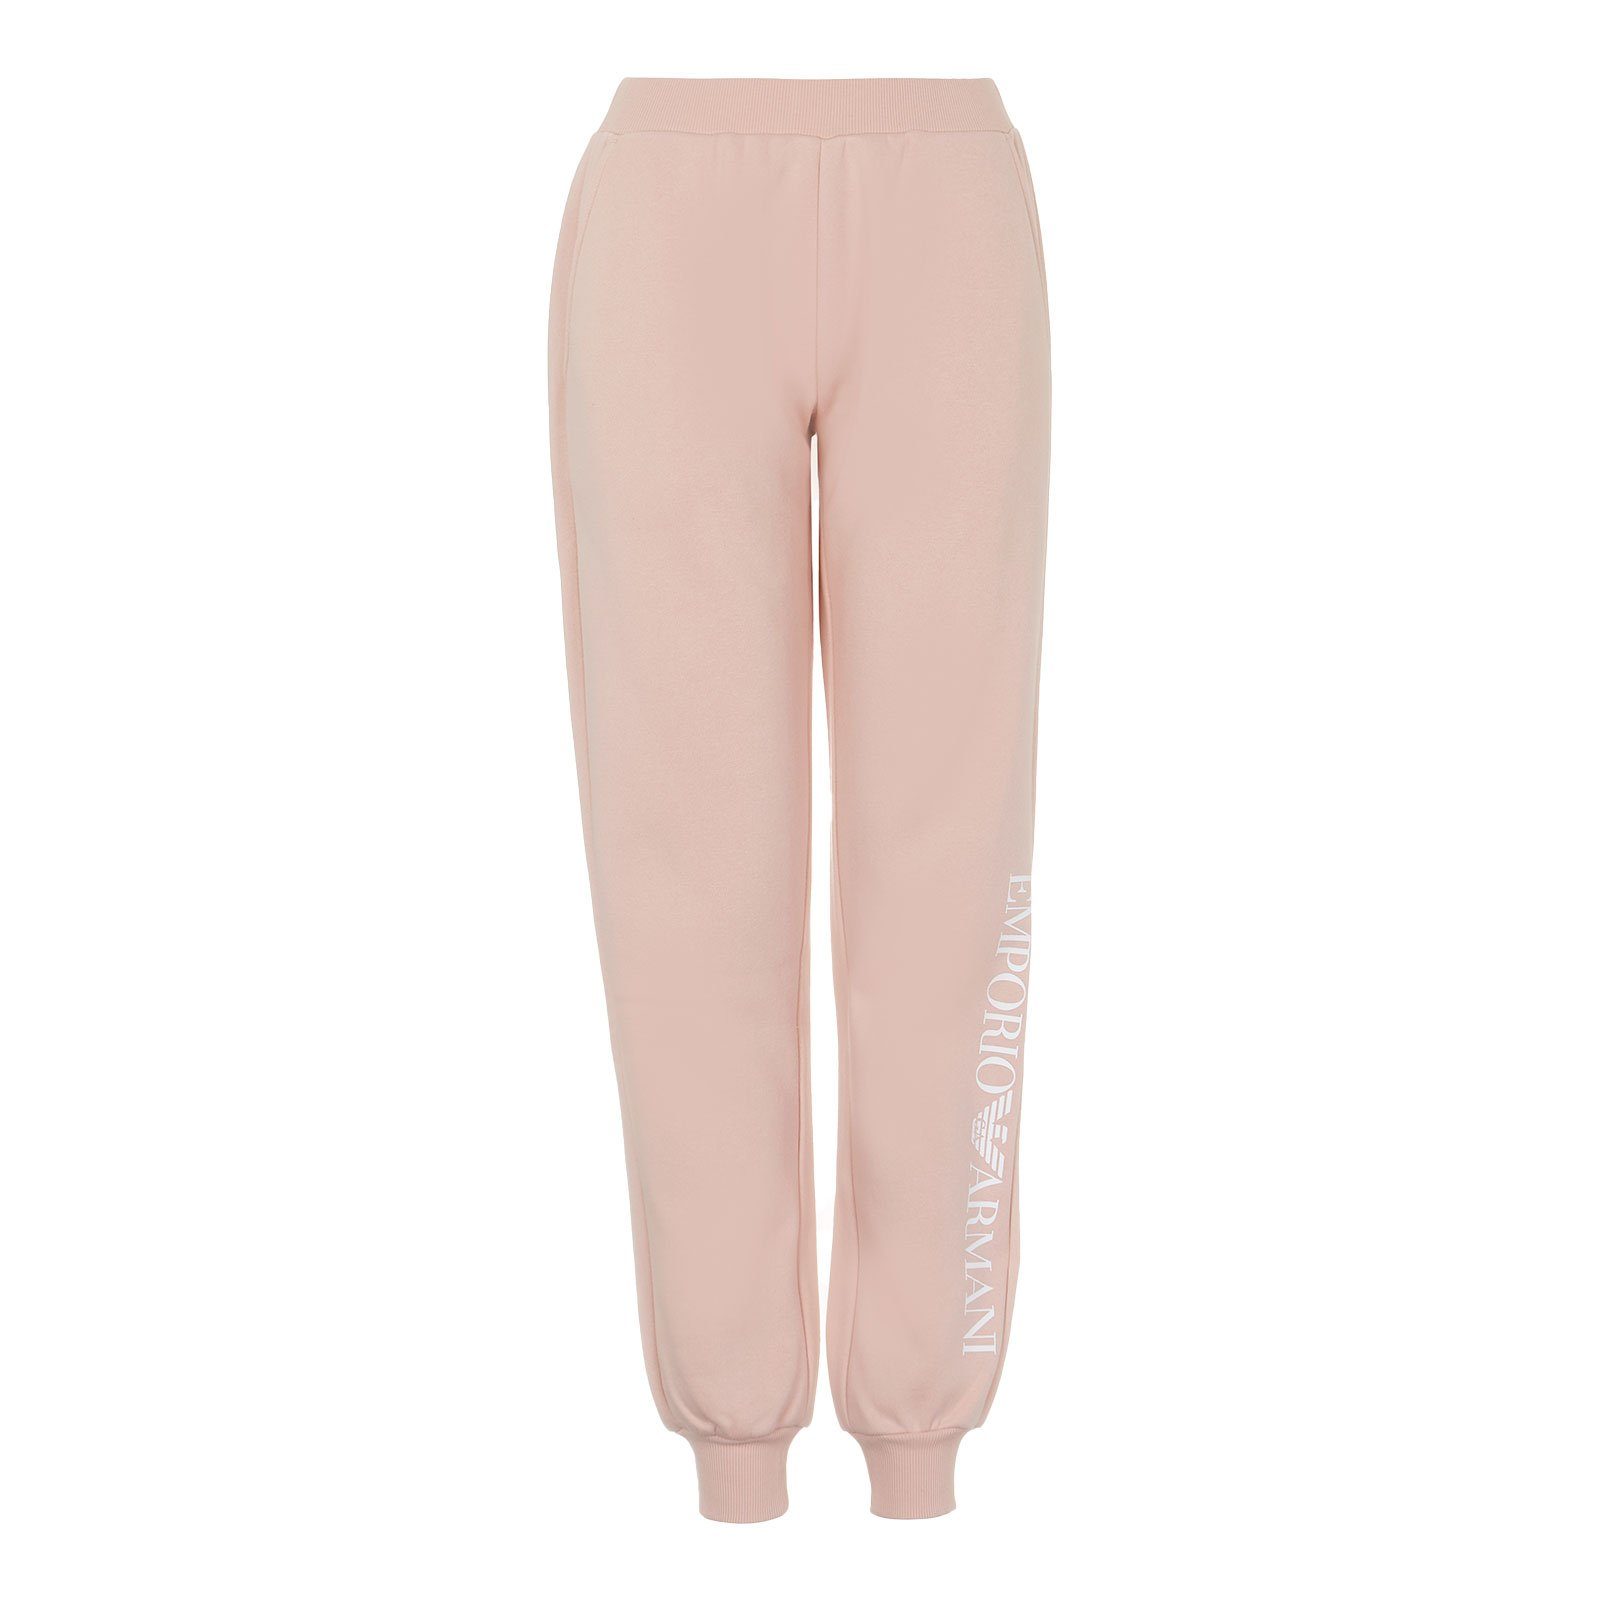 Emporio Armani Loungehose Pants with Cuffs mit kleinem Markenschriftzug am linken Bein 00470 powder pink